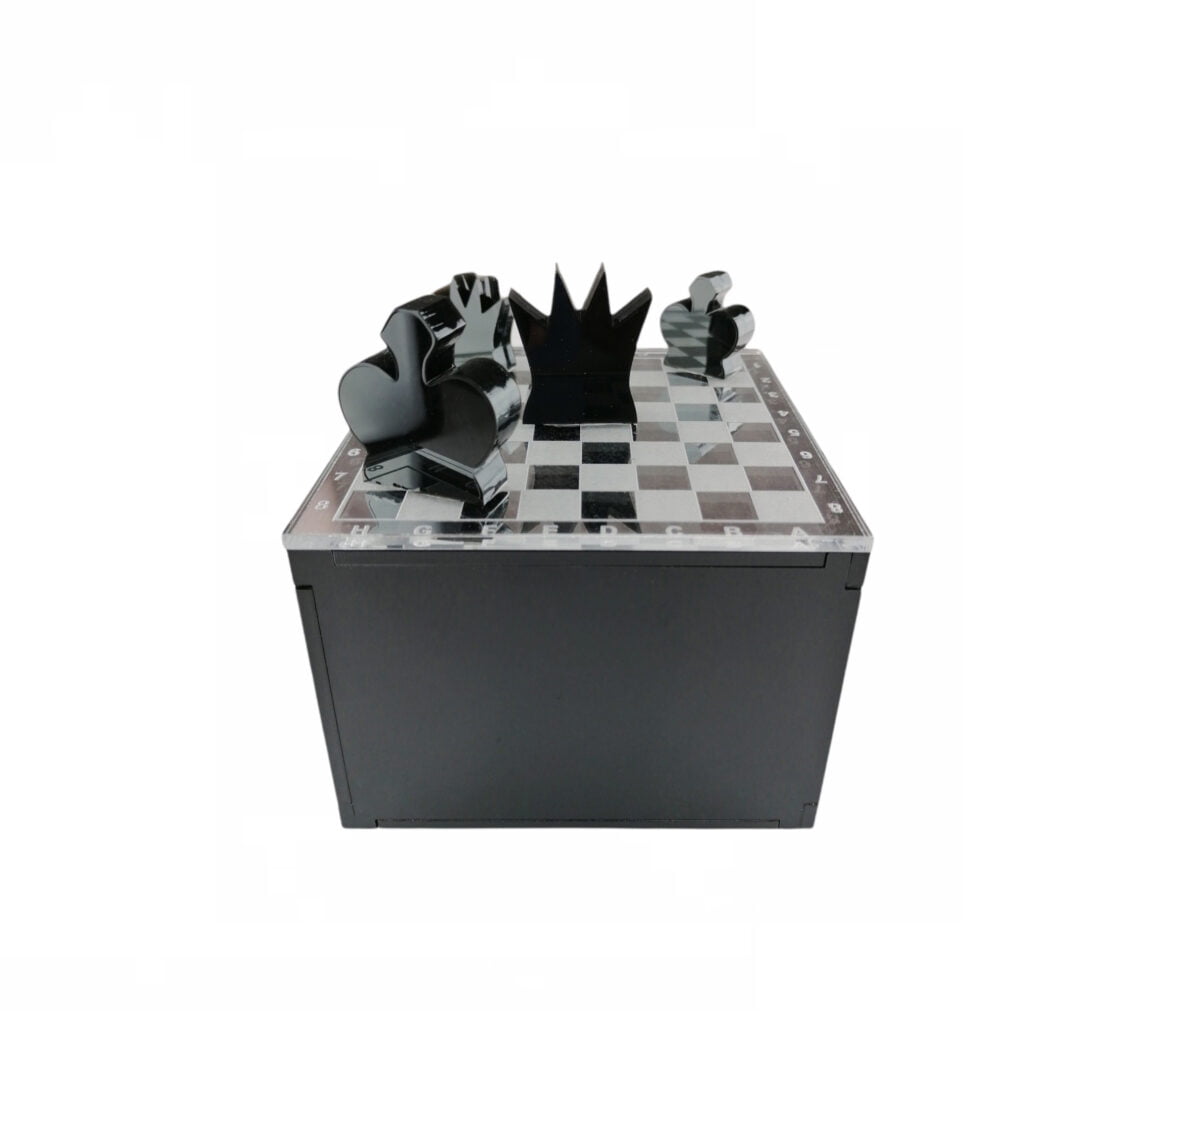 “Κουτί-σκακιέρα” από Plexiglass